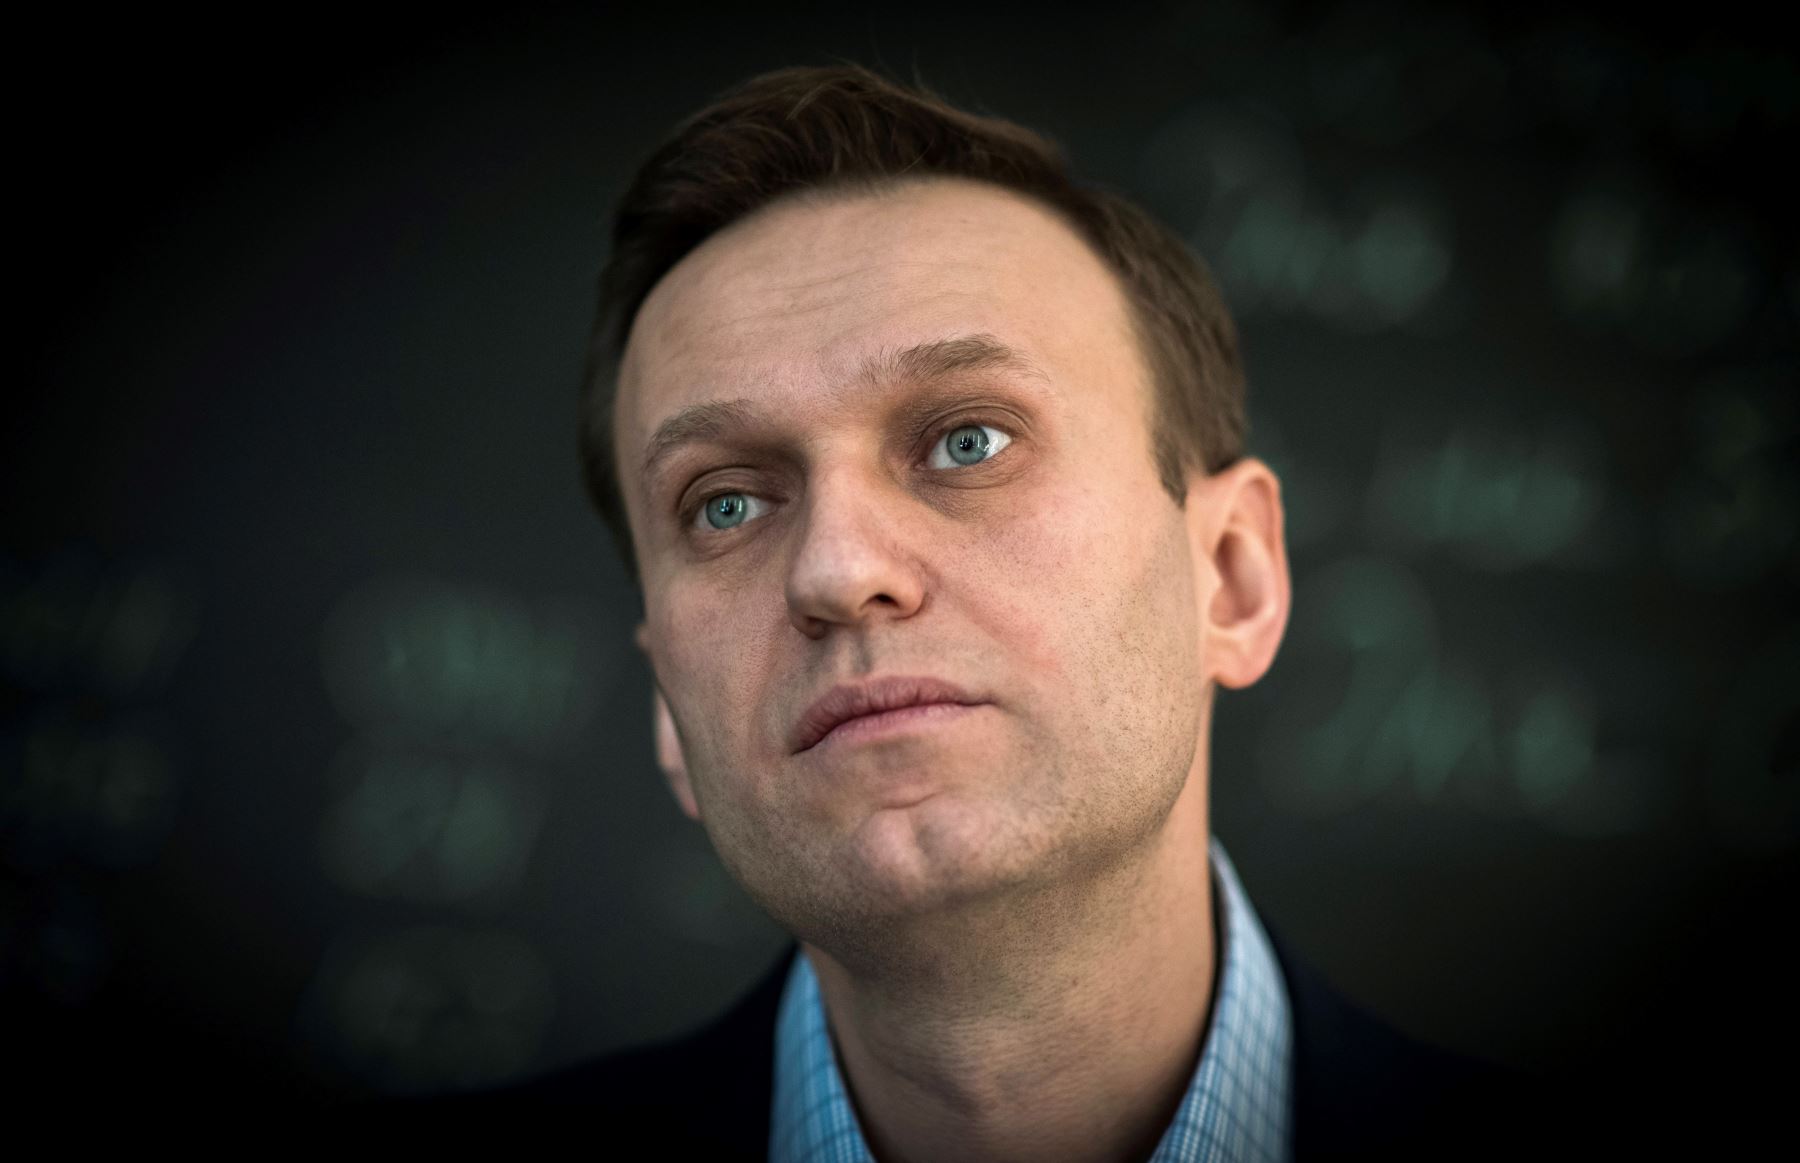 Por su parte, Peskov insistió el jueves en el hecho de que "ninguna sustancia tóxica" fue detectada por los médicos rusos antes del traslado de Navalni a Berlín. Foto: AFP